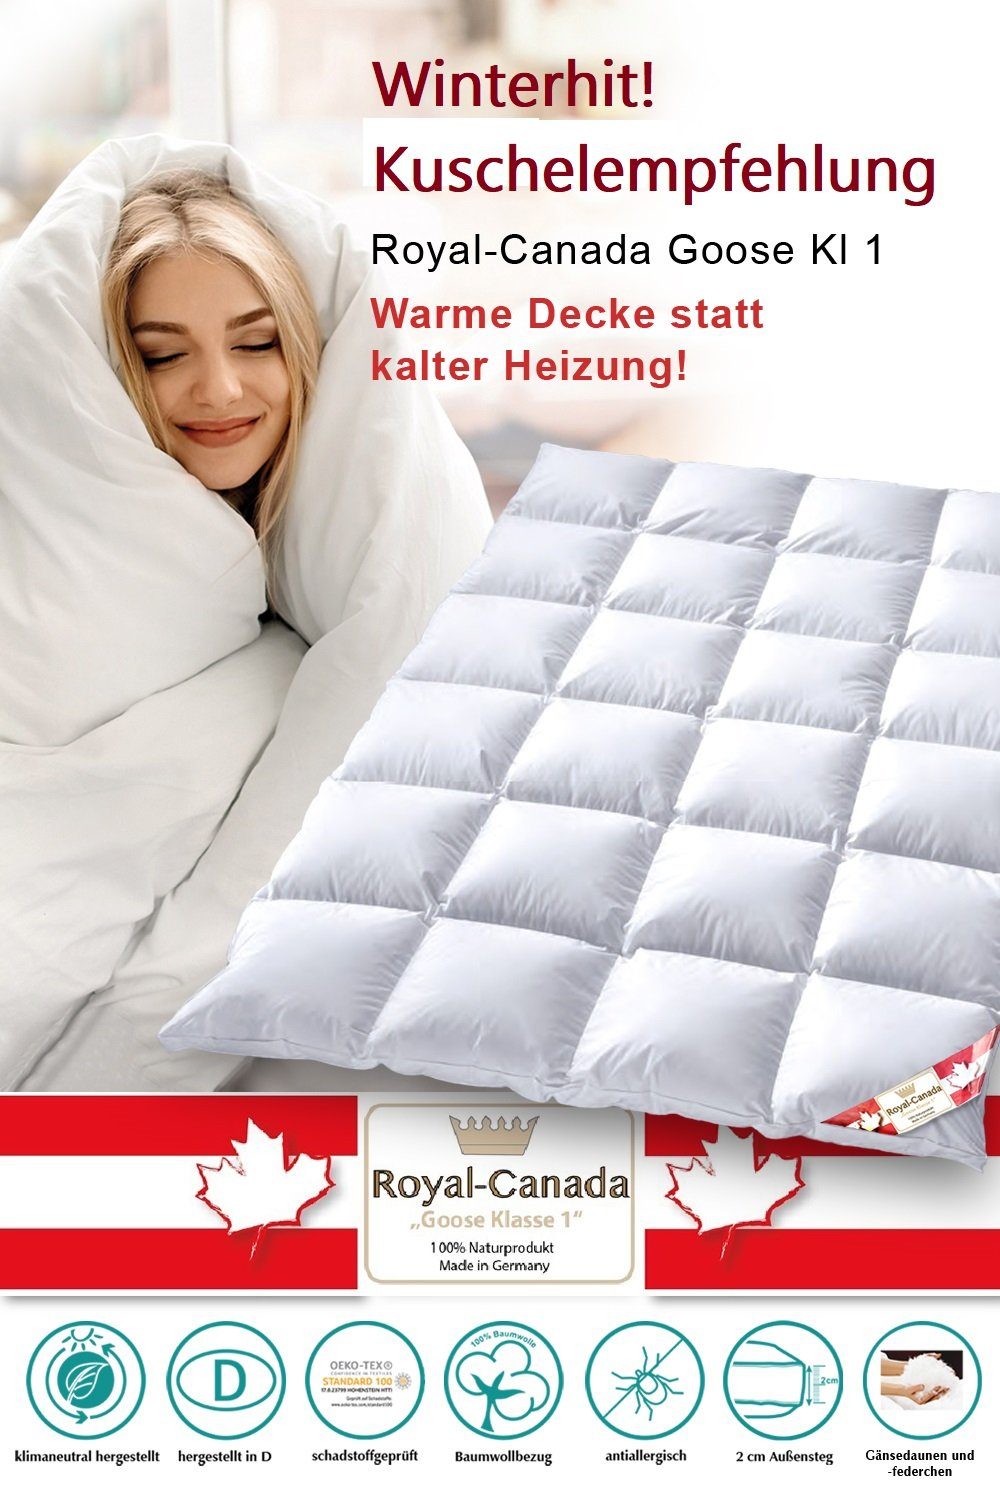 Gänsedaunenbettdecke, Gänsedaunenbettdecke Royal Canada Goose sorgt Wohlige Winterdecke Gänsedaune Betten Plus Schlaf für Wärme Aussensteg Traumland, angenehmen Kassettendecke